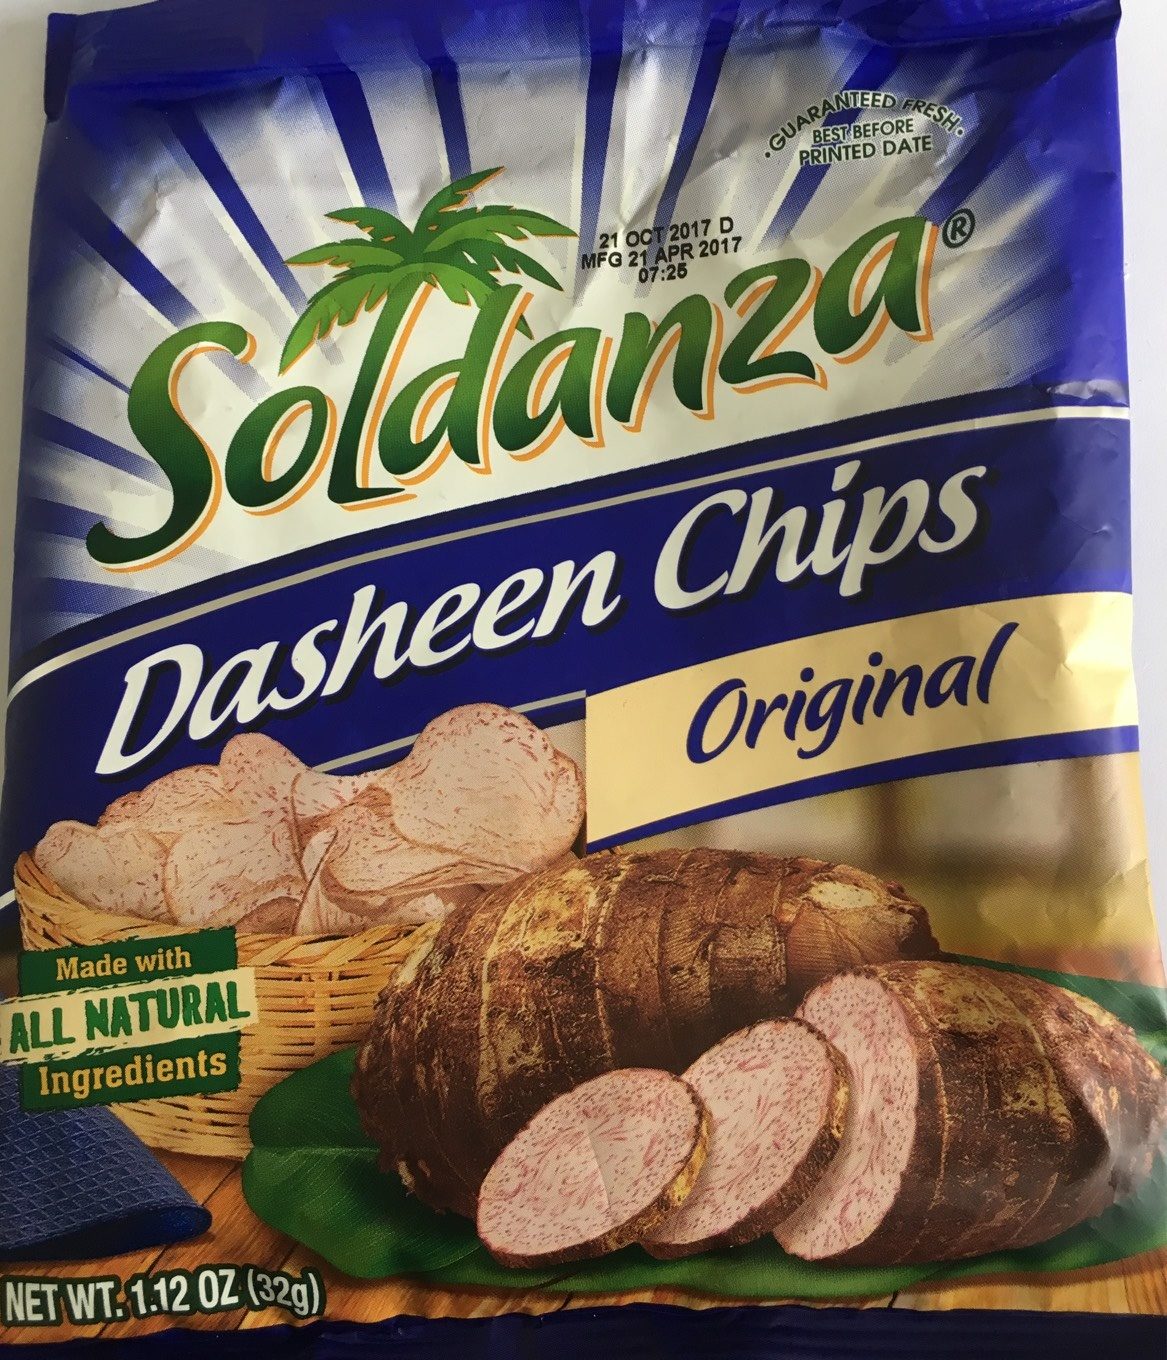 Soldanza Dasheen Chips